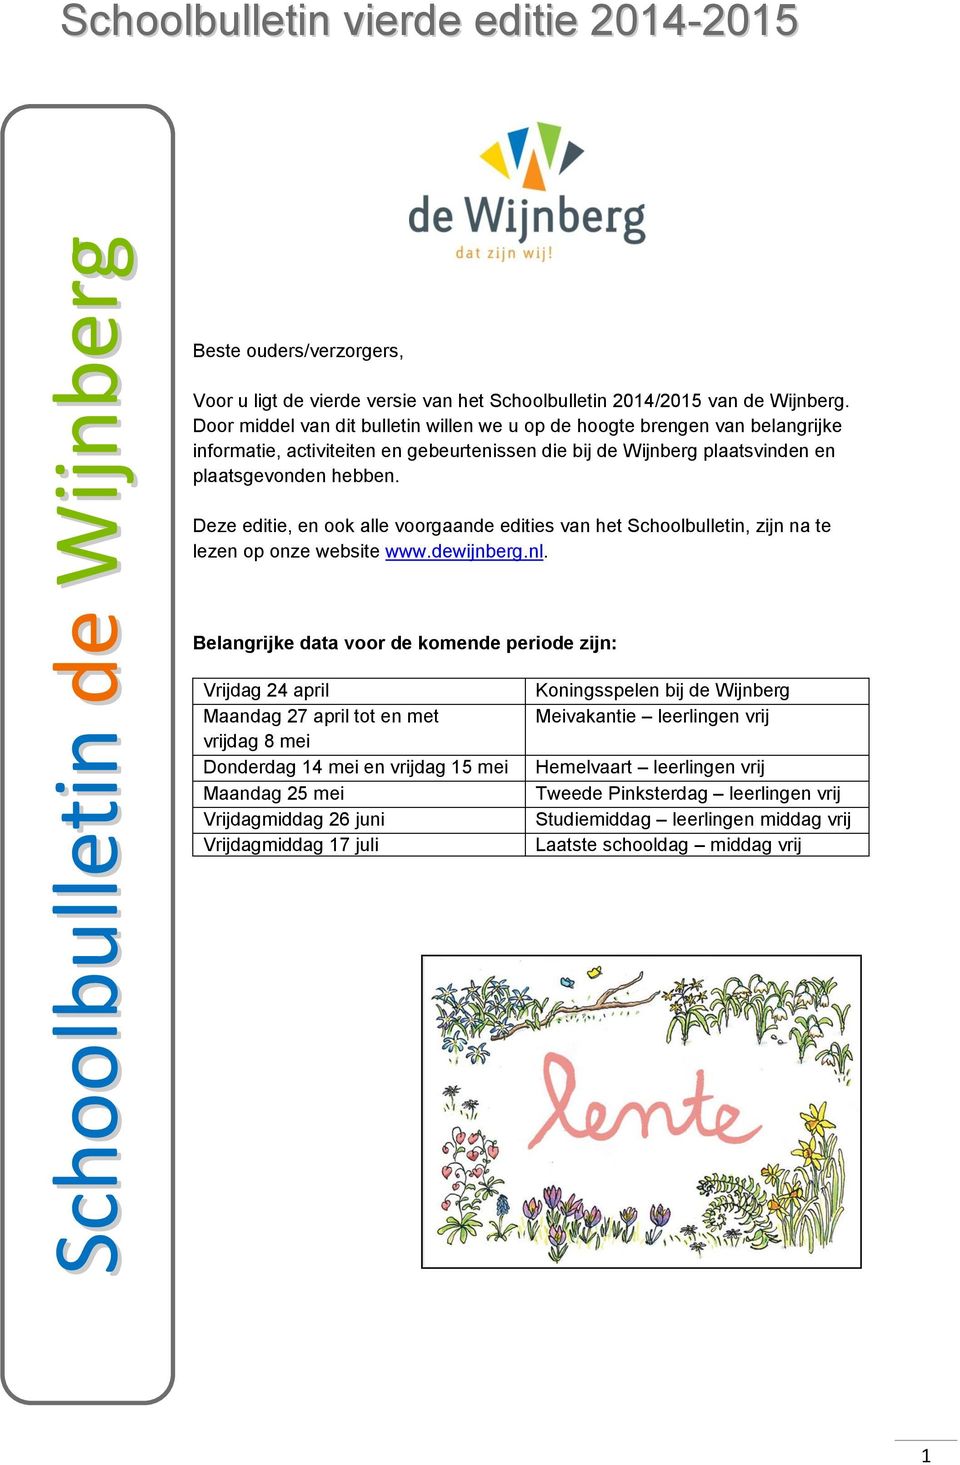 Deze editie, en ook alle voorgaande edities van het Schoolbulletin, zijn na te lezen op onze website www.dewijnberg.nl.